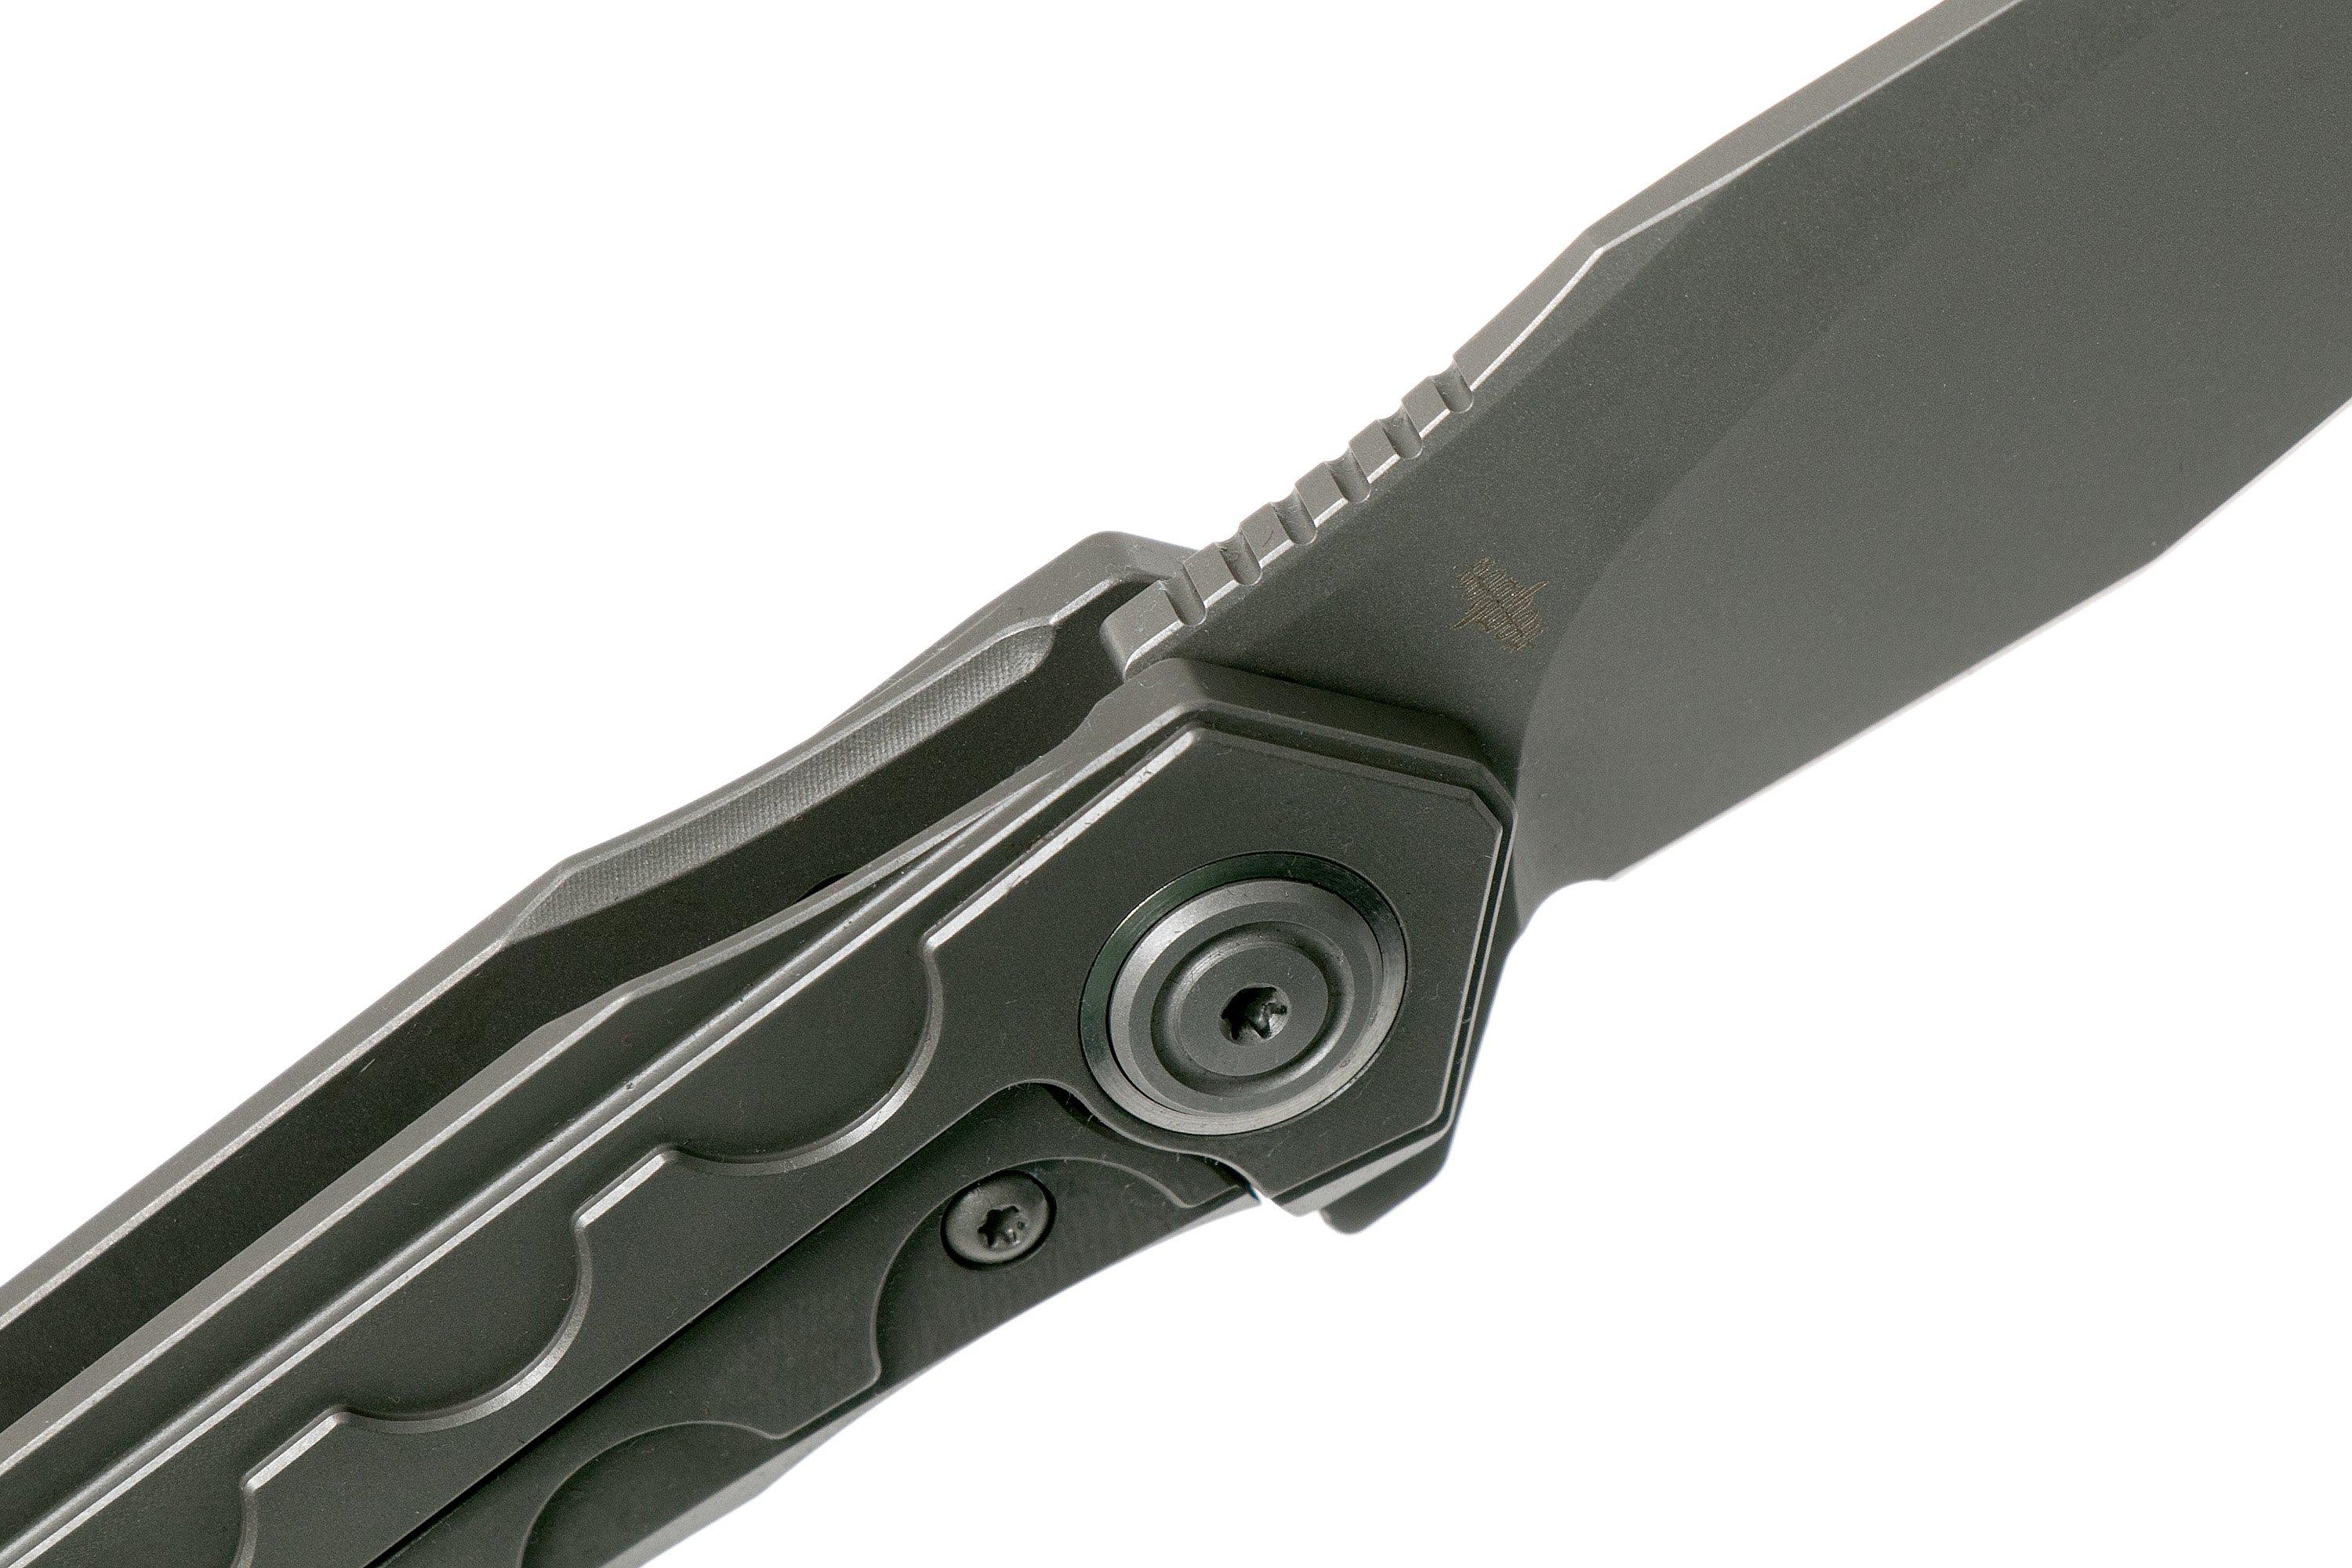 Bestech Samari BT2009A Titanium Grey pocket knife, Kombou design 